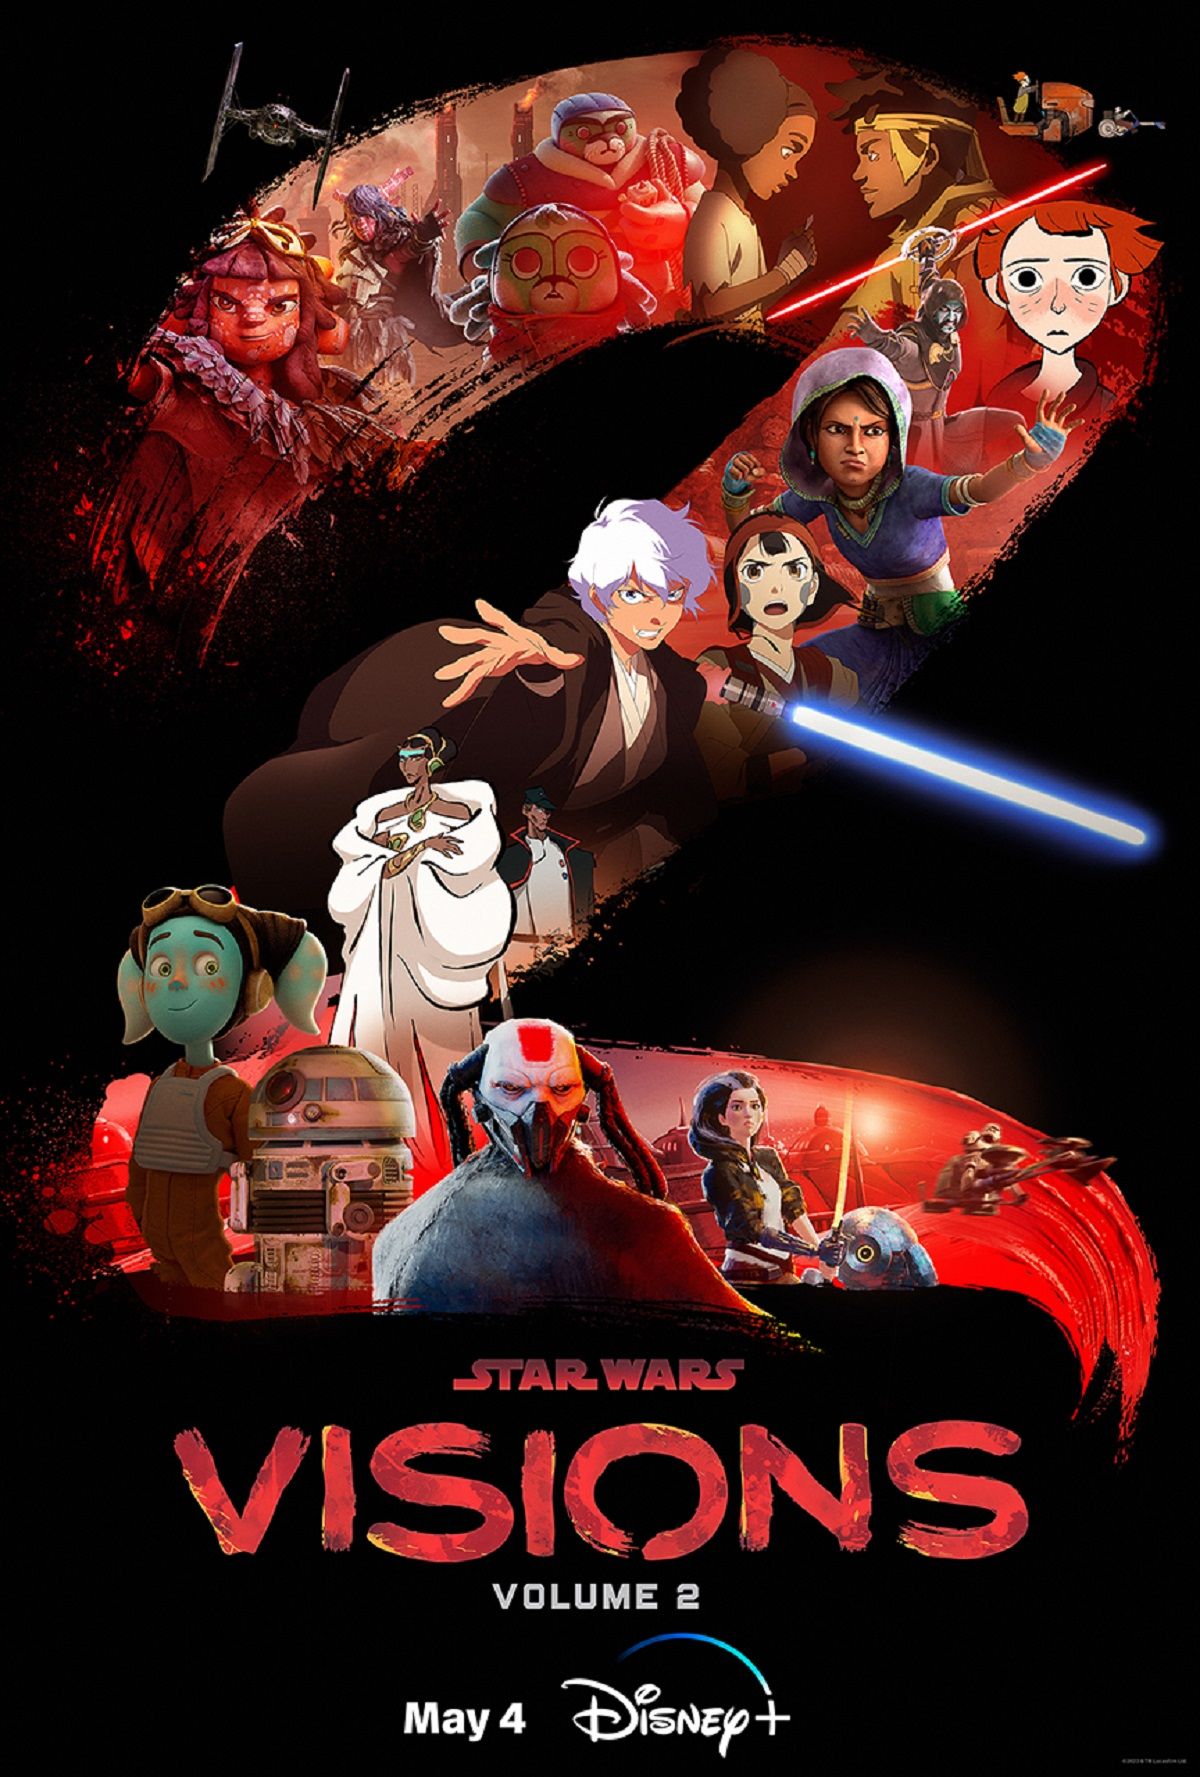 Star Wars Visions Volume 2 Trailer Reveals First Look at Aardman